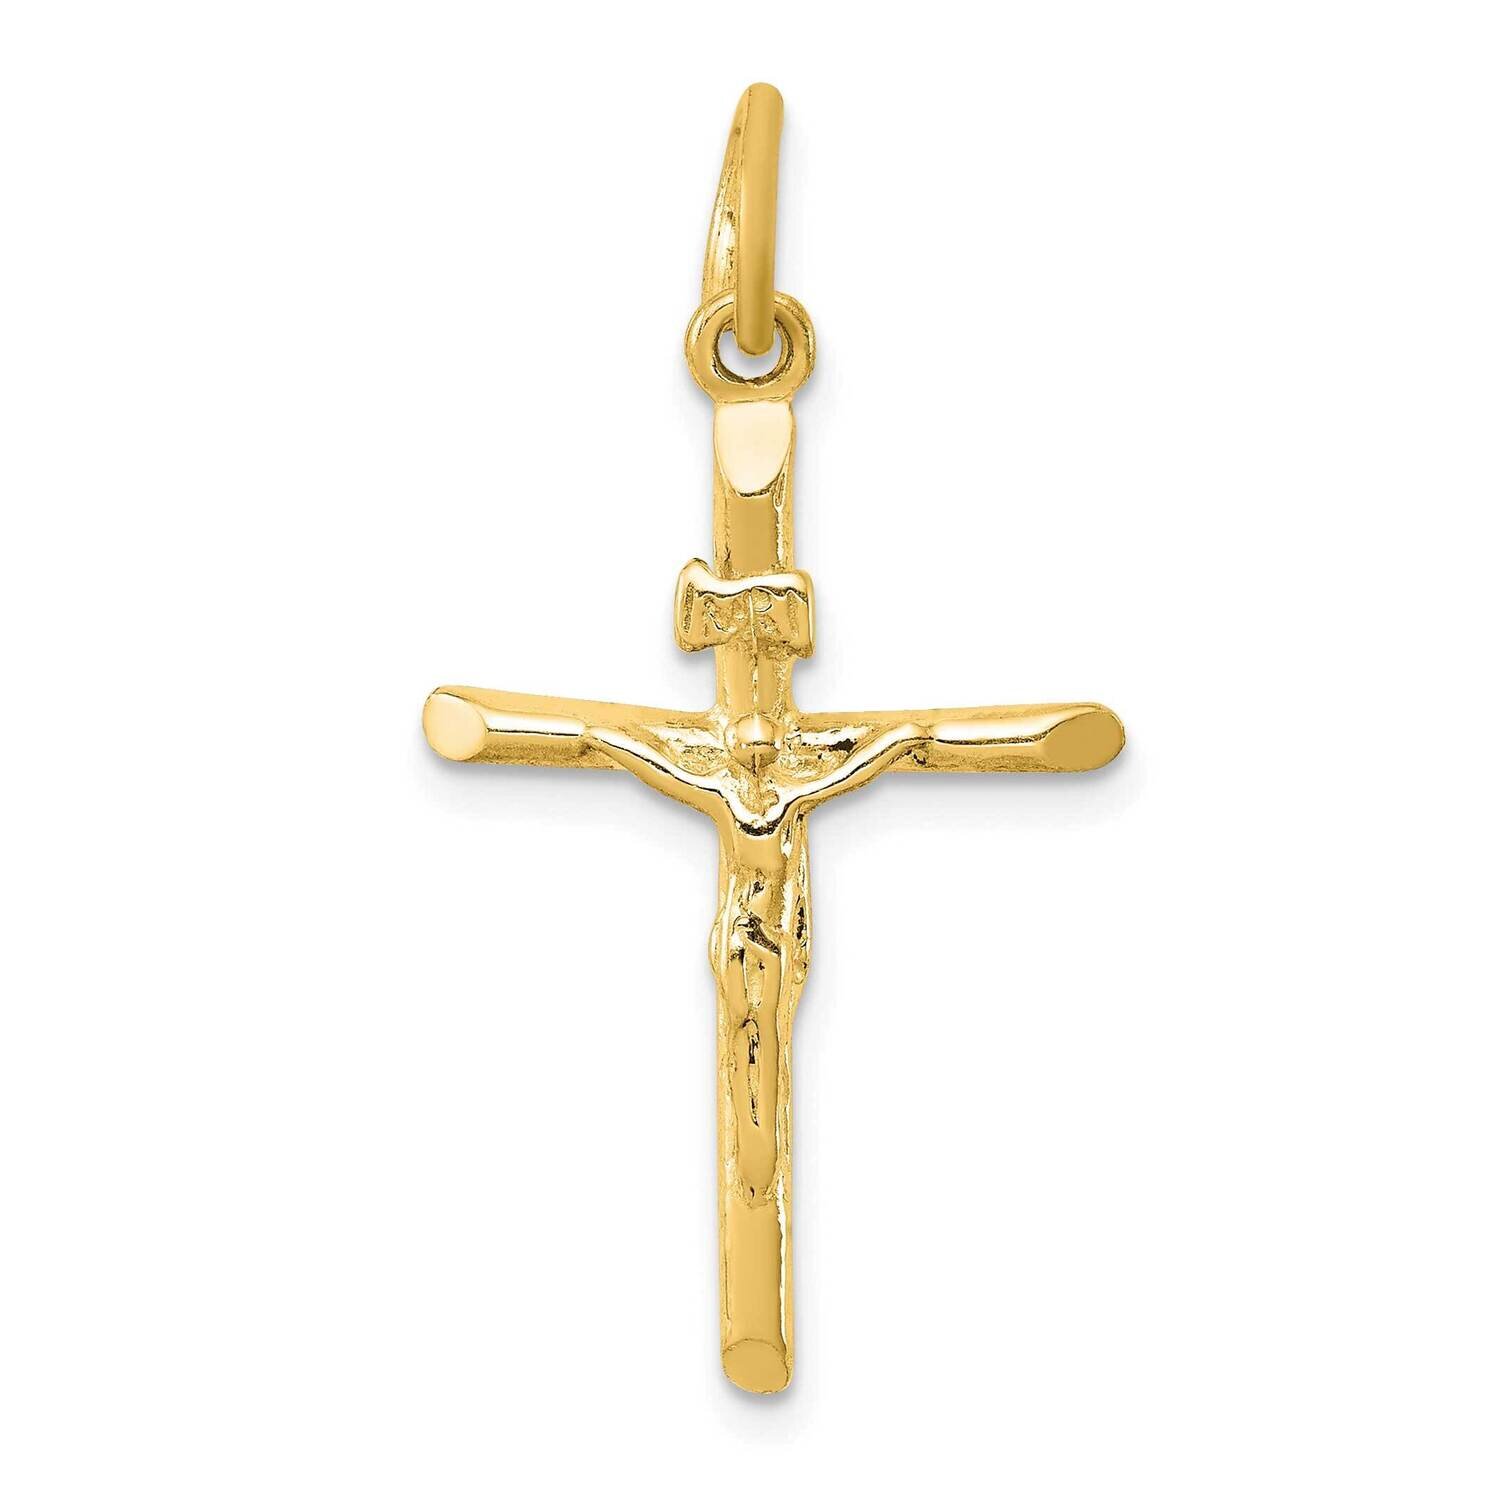 Inri Crucifix Pendant Sterling Silver Gold-Tone QC1276GP